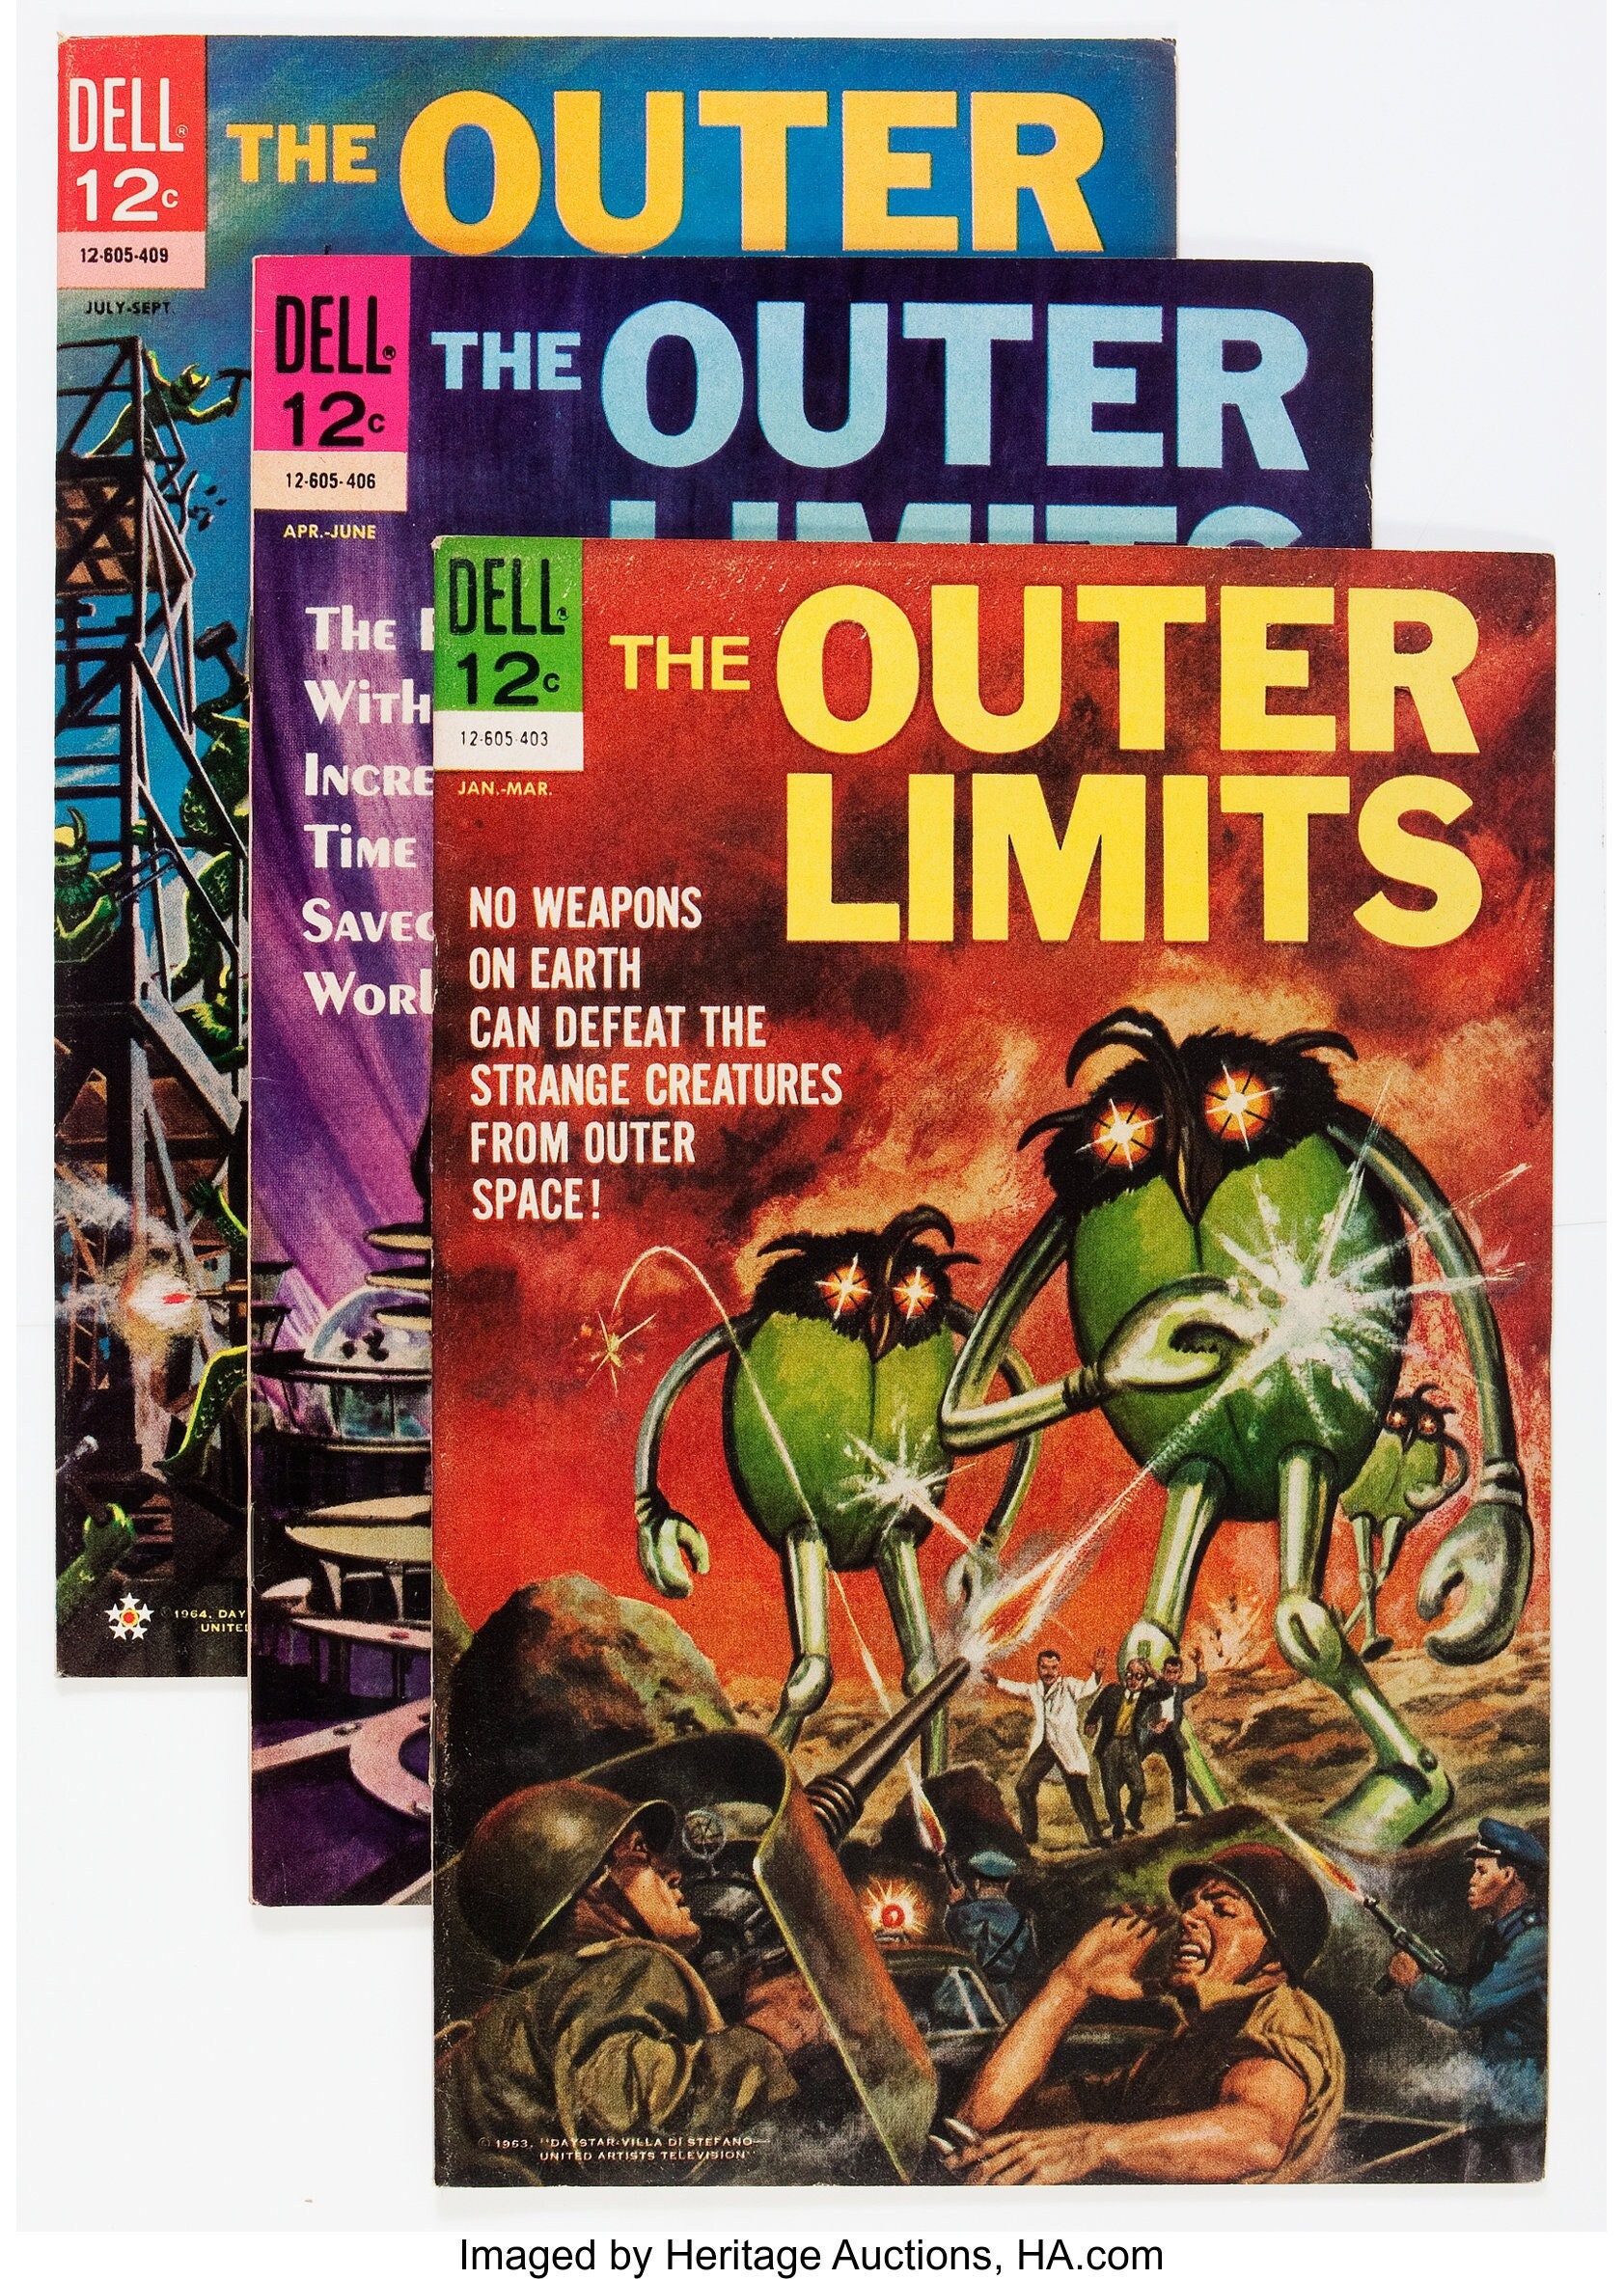 Outerlimits comics